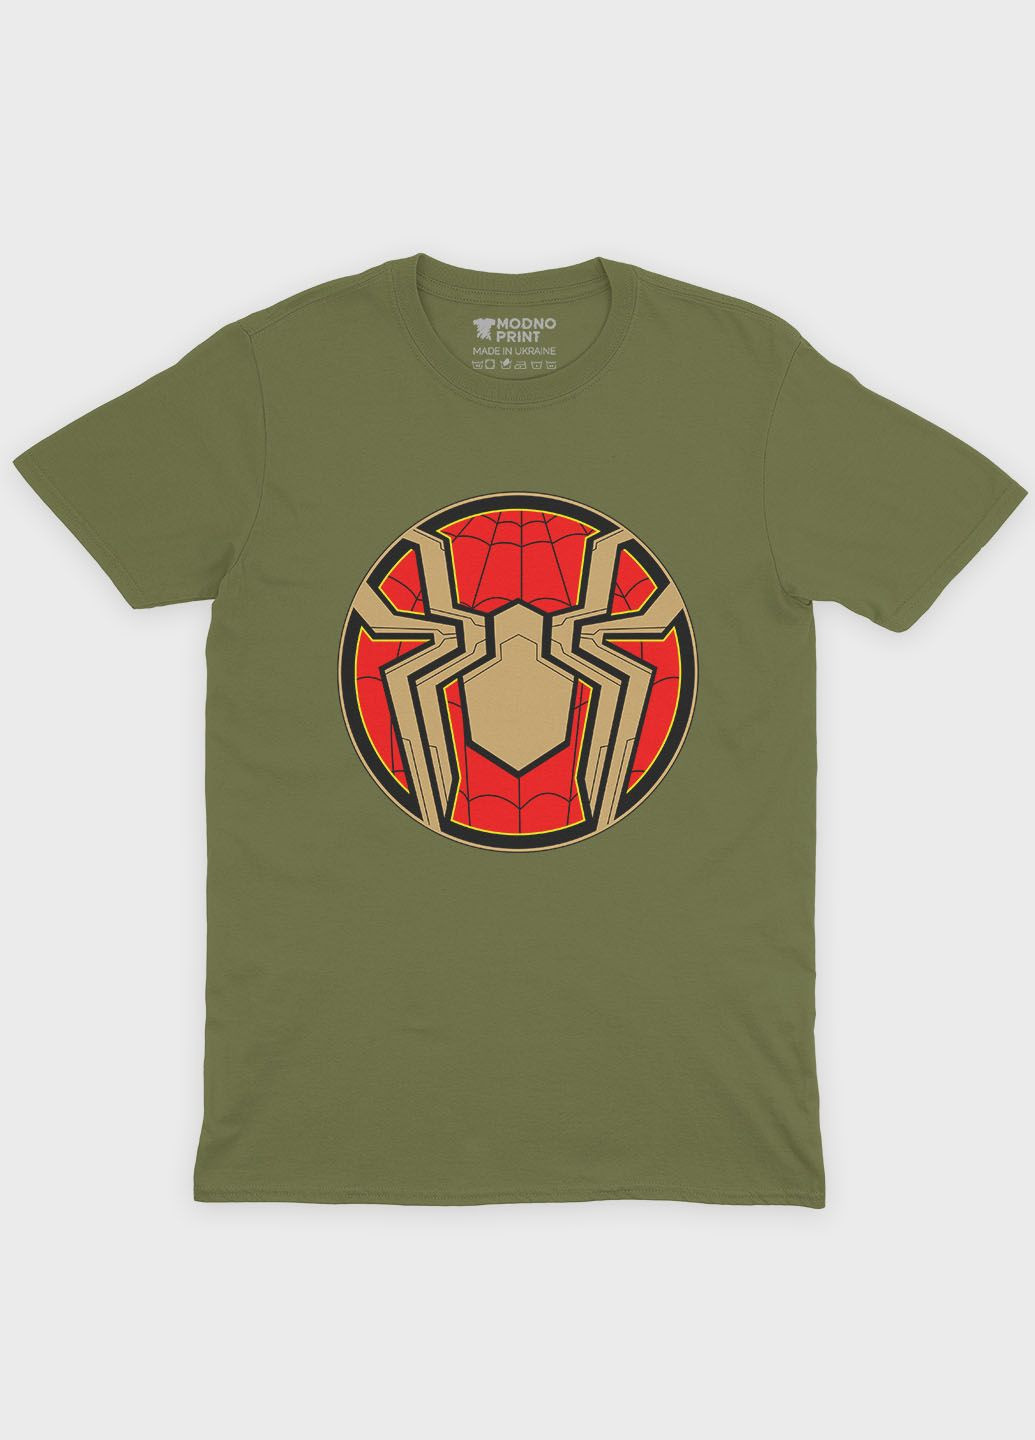 Хаки (оливковая) мужская футболка с принтом супергероя - человек-паук (ts001-1-hgr-006-014-105) Modno